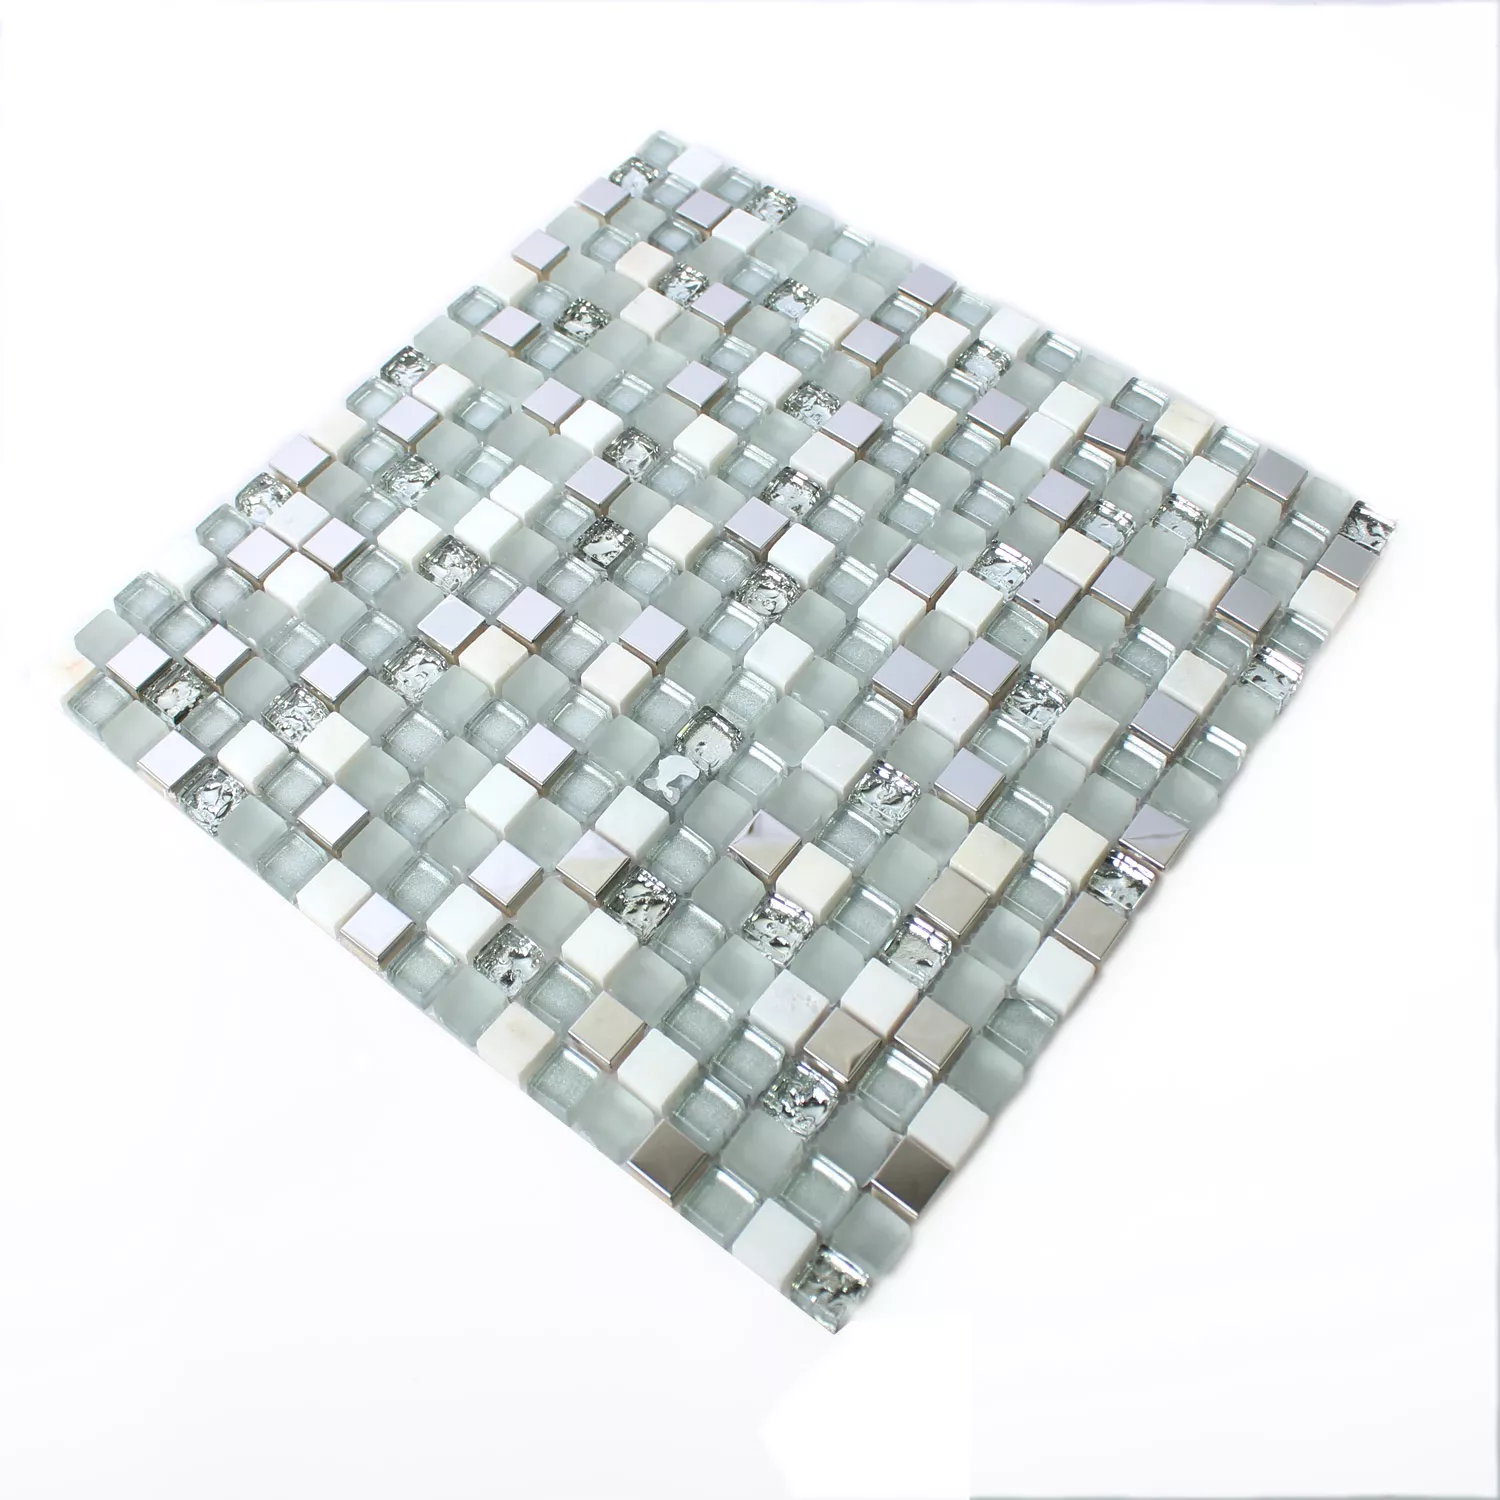 Glas Edelstahl Naturstein Mosaik Fliesen Weiss Silber